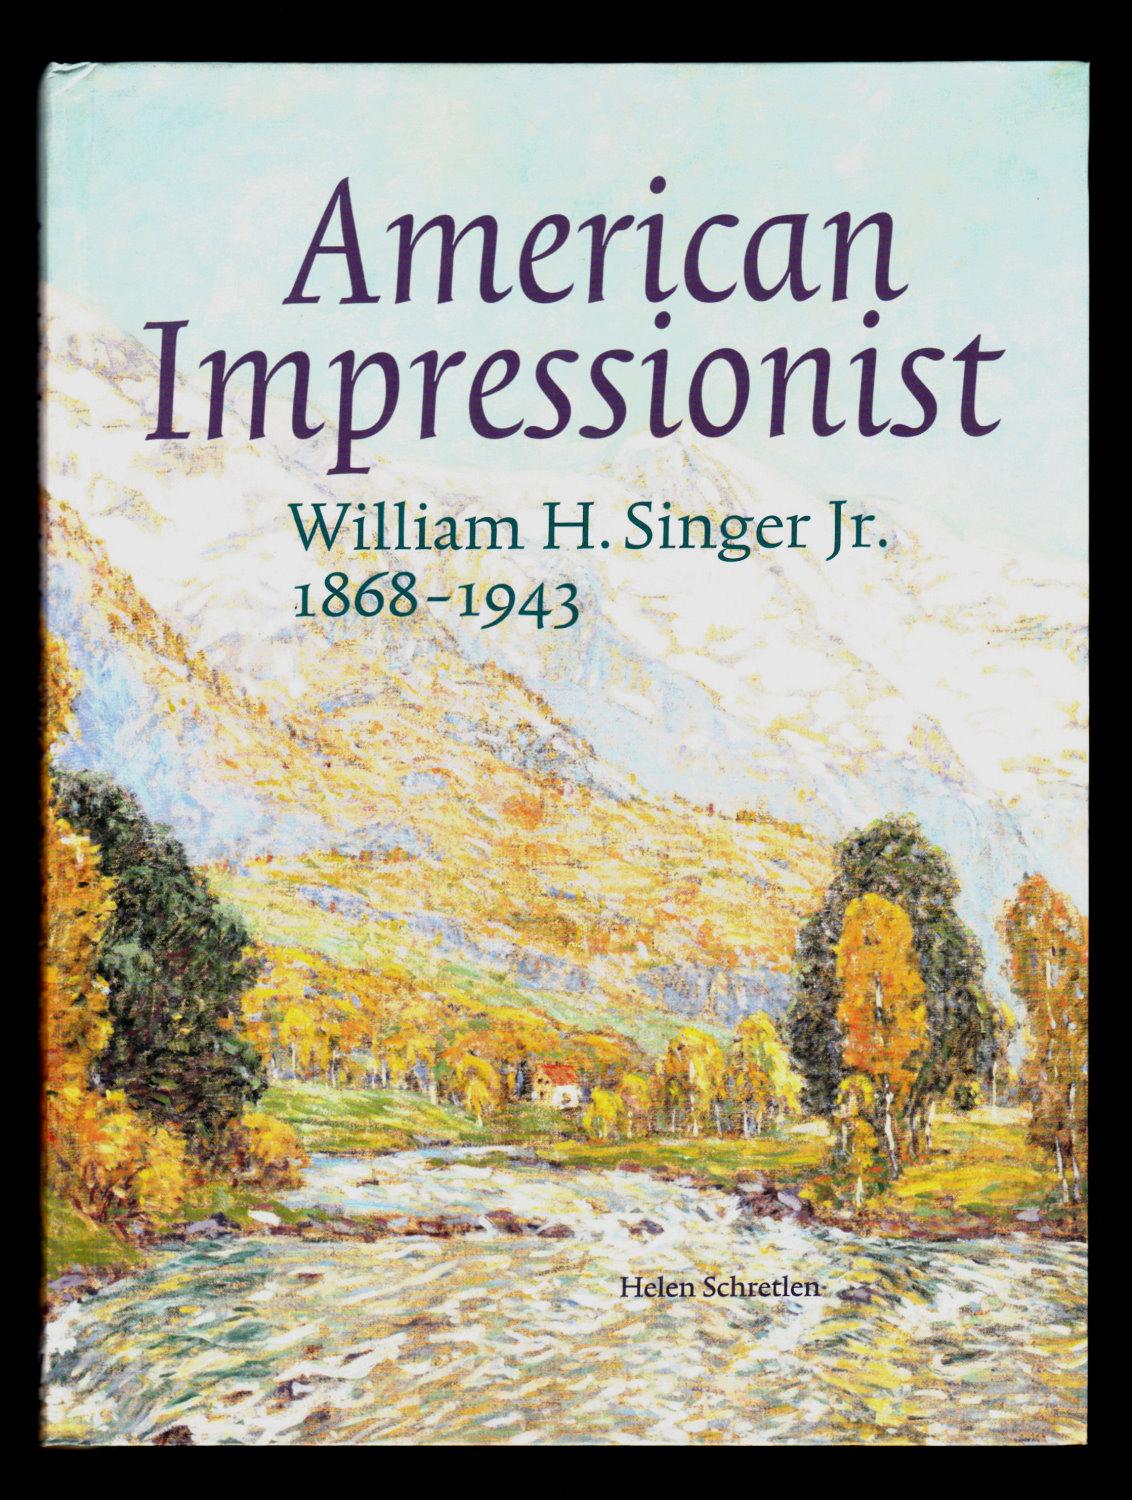 American Impressionist: William H. Singer Jr., 1868-1943 (Dutch-language edition) - Helen Schretlen